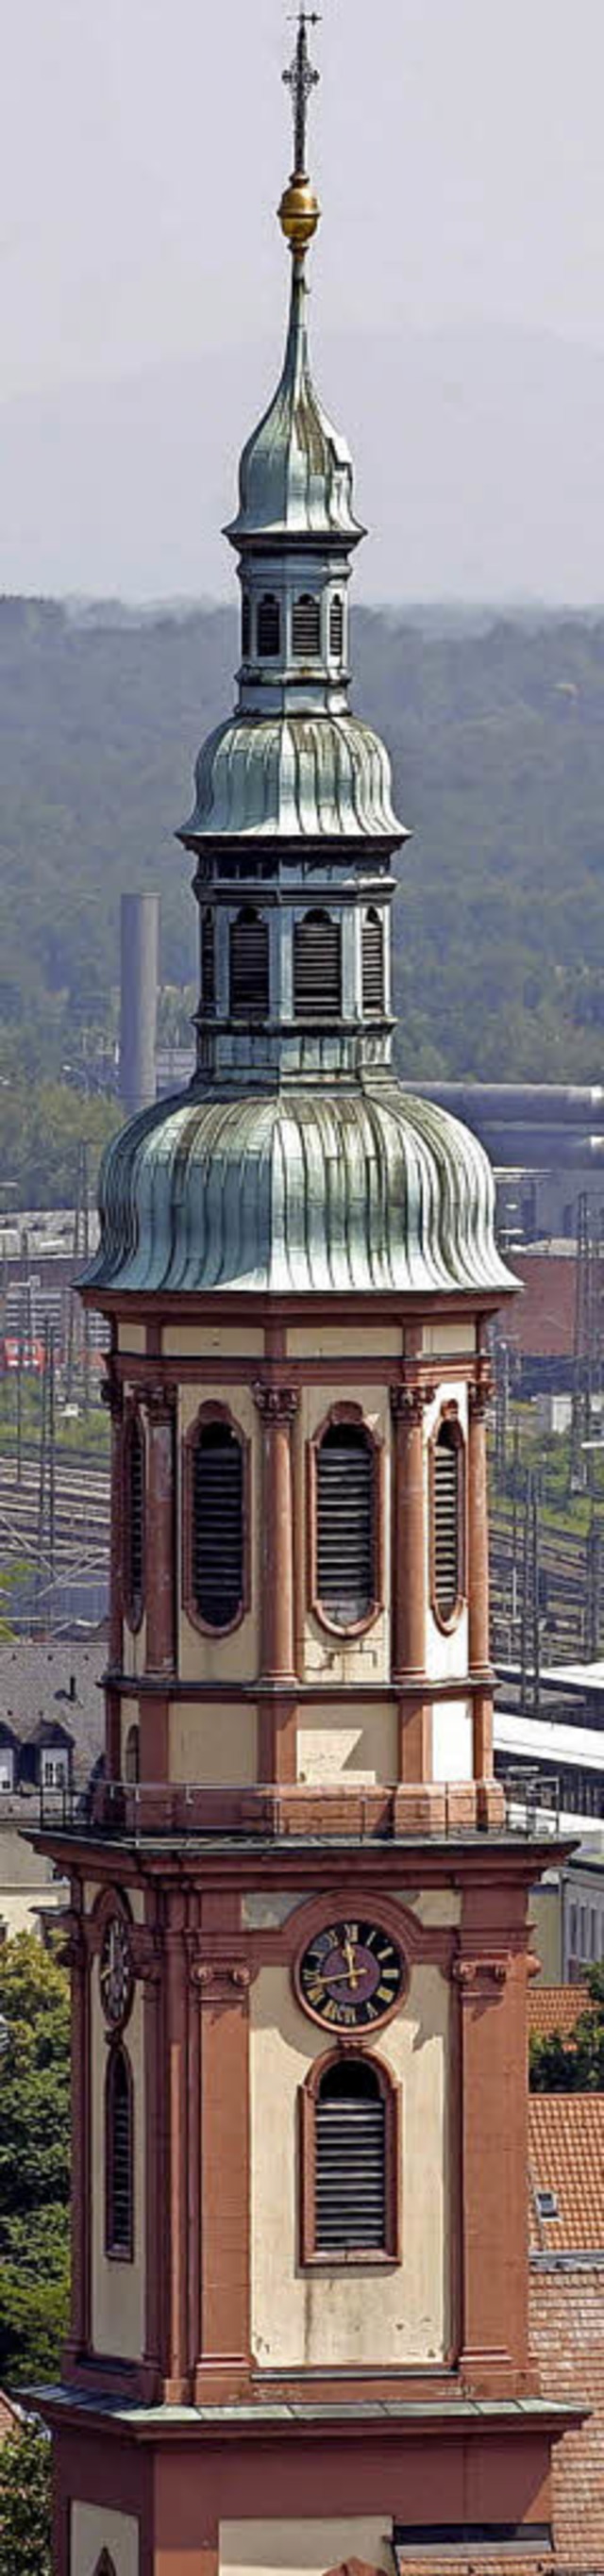 Offenburger Wahrzeichen: der Turm der Heilig-Kreuz-Kirche  | Foto: P. Heck